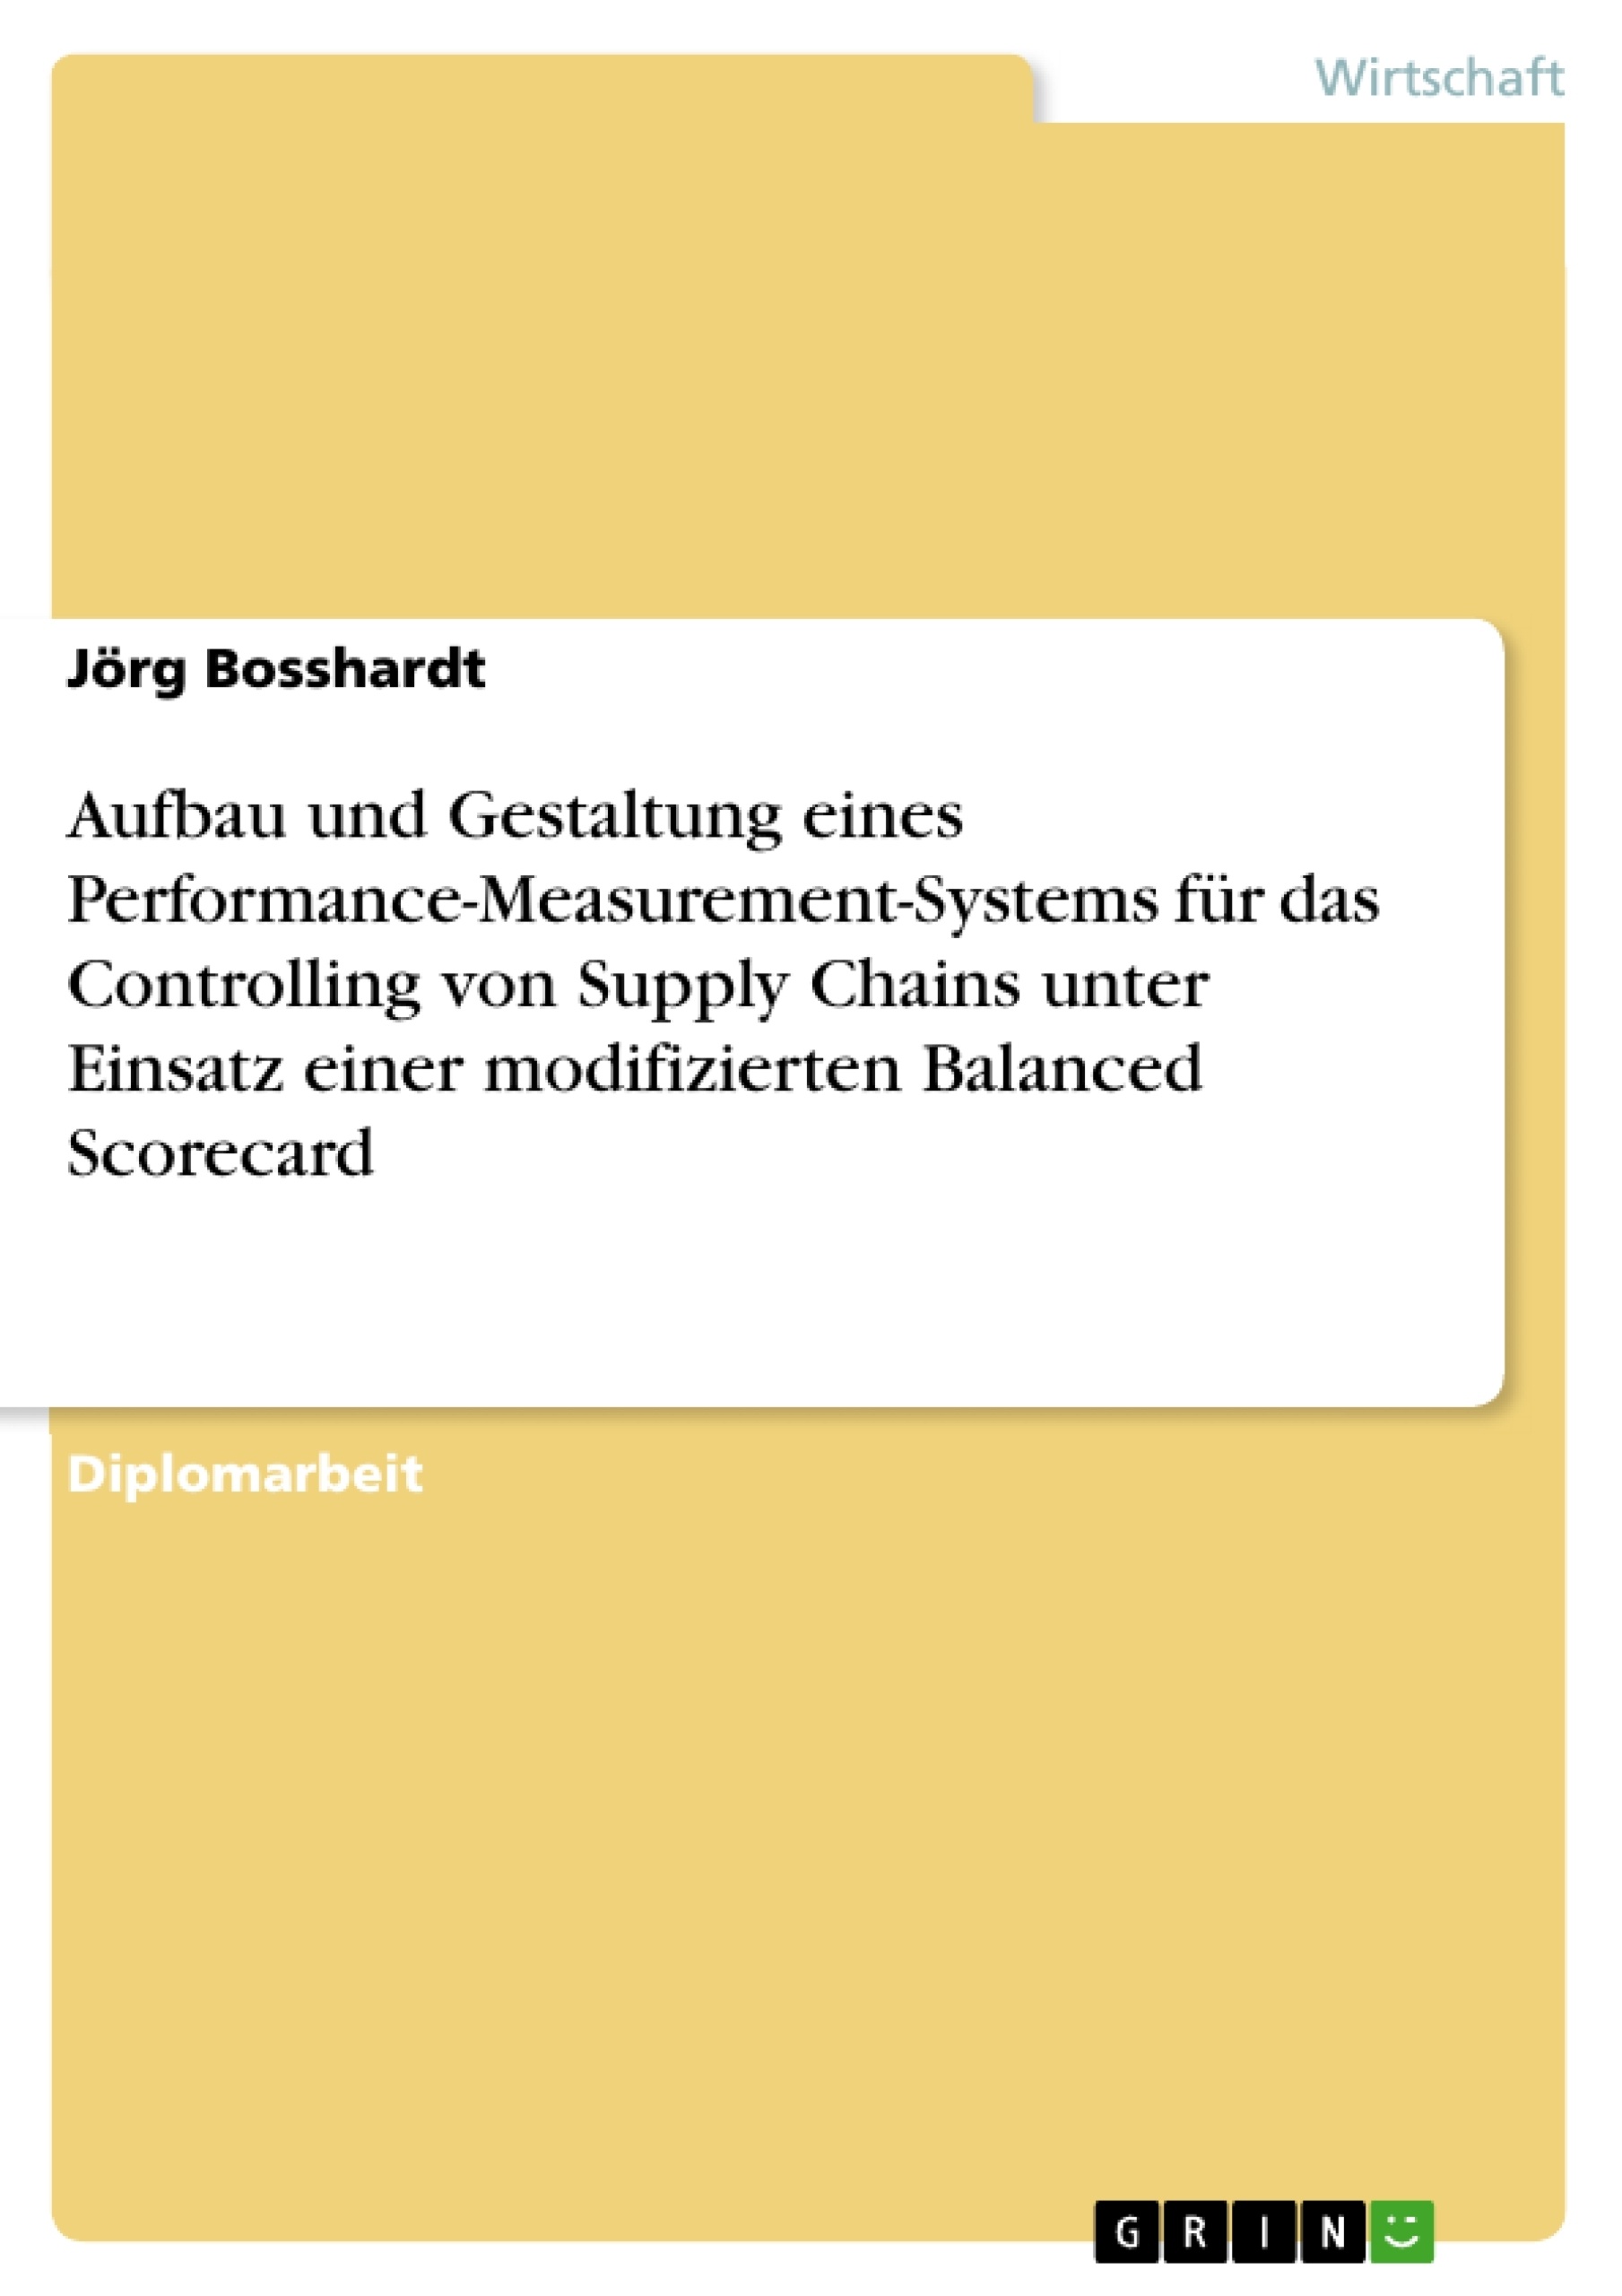 Titel: Aufbau und Gestaltung eines Performance-Measurement-Systems für das Controlling von Supply Chains unter Einsatz einer modifizierten Balanced Scorecard